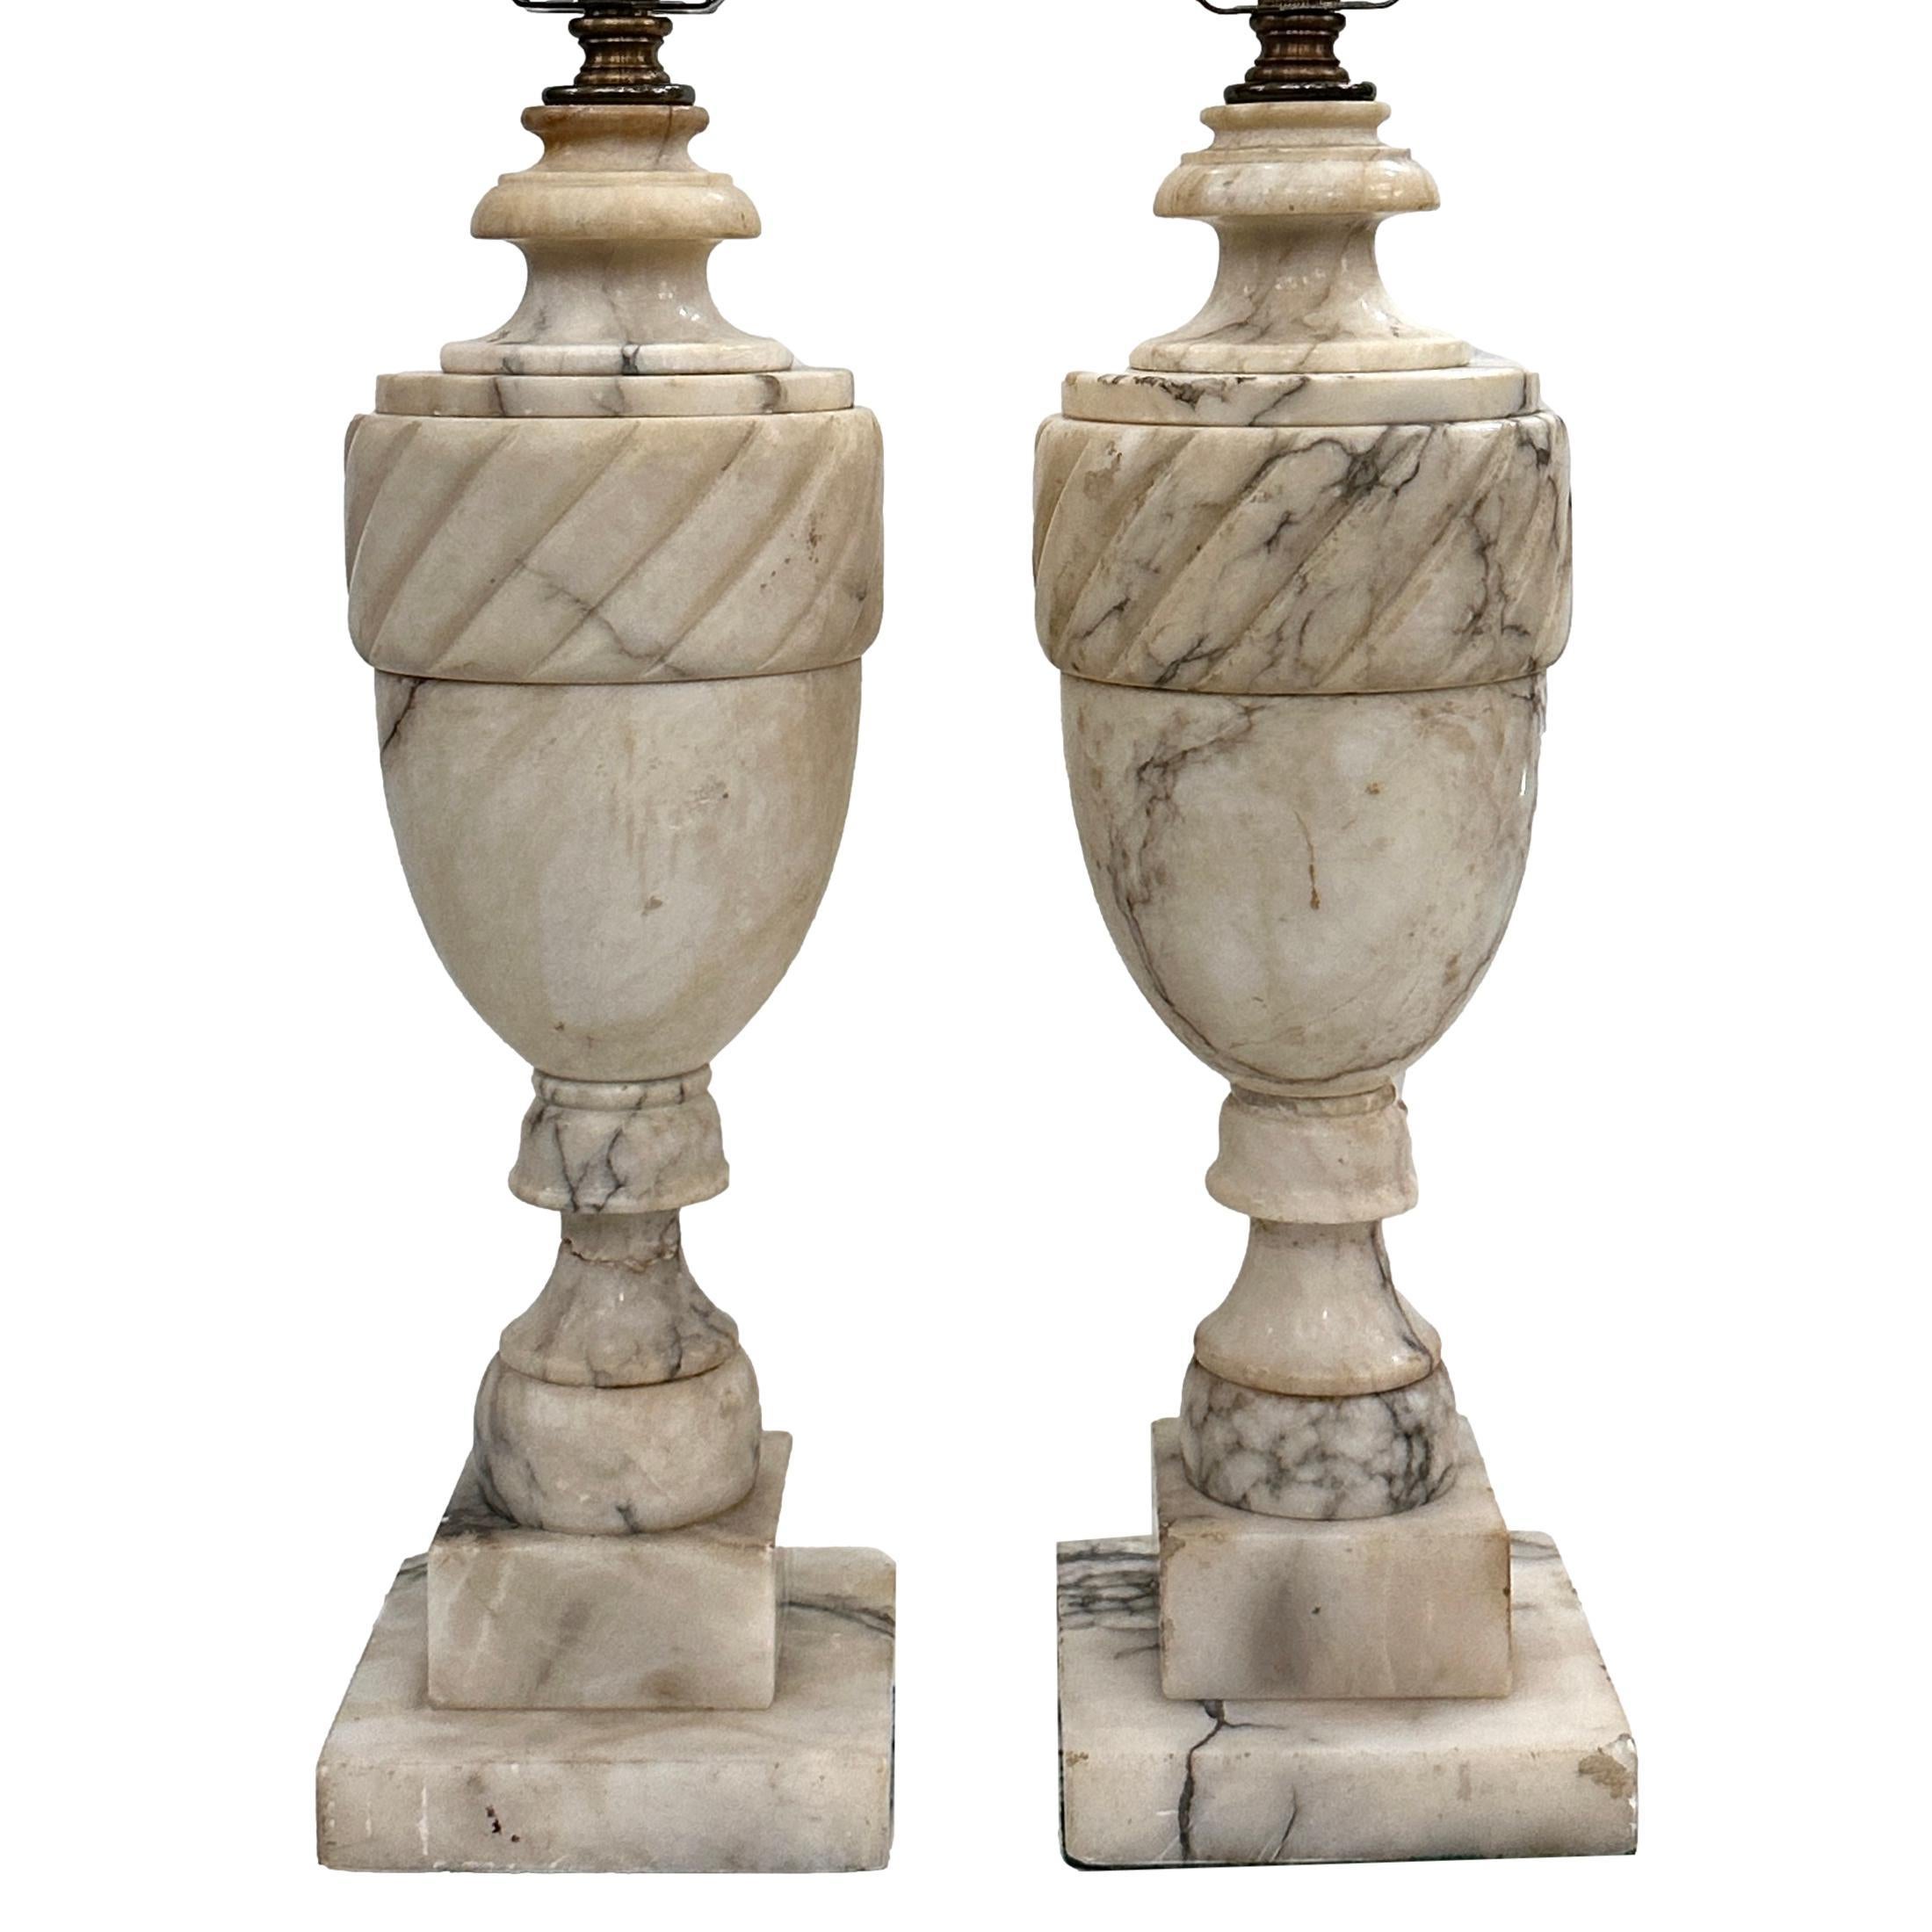 Ein Paar italienische Tischlampen aus geschnitztem Alabaster mit Sockel, circa 1920.

Abmessungen:
Höhe des Körpers: 15